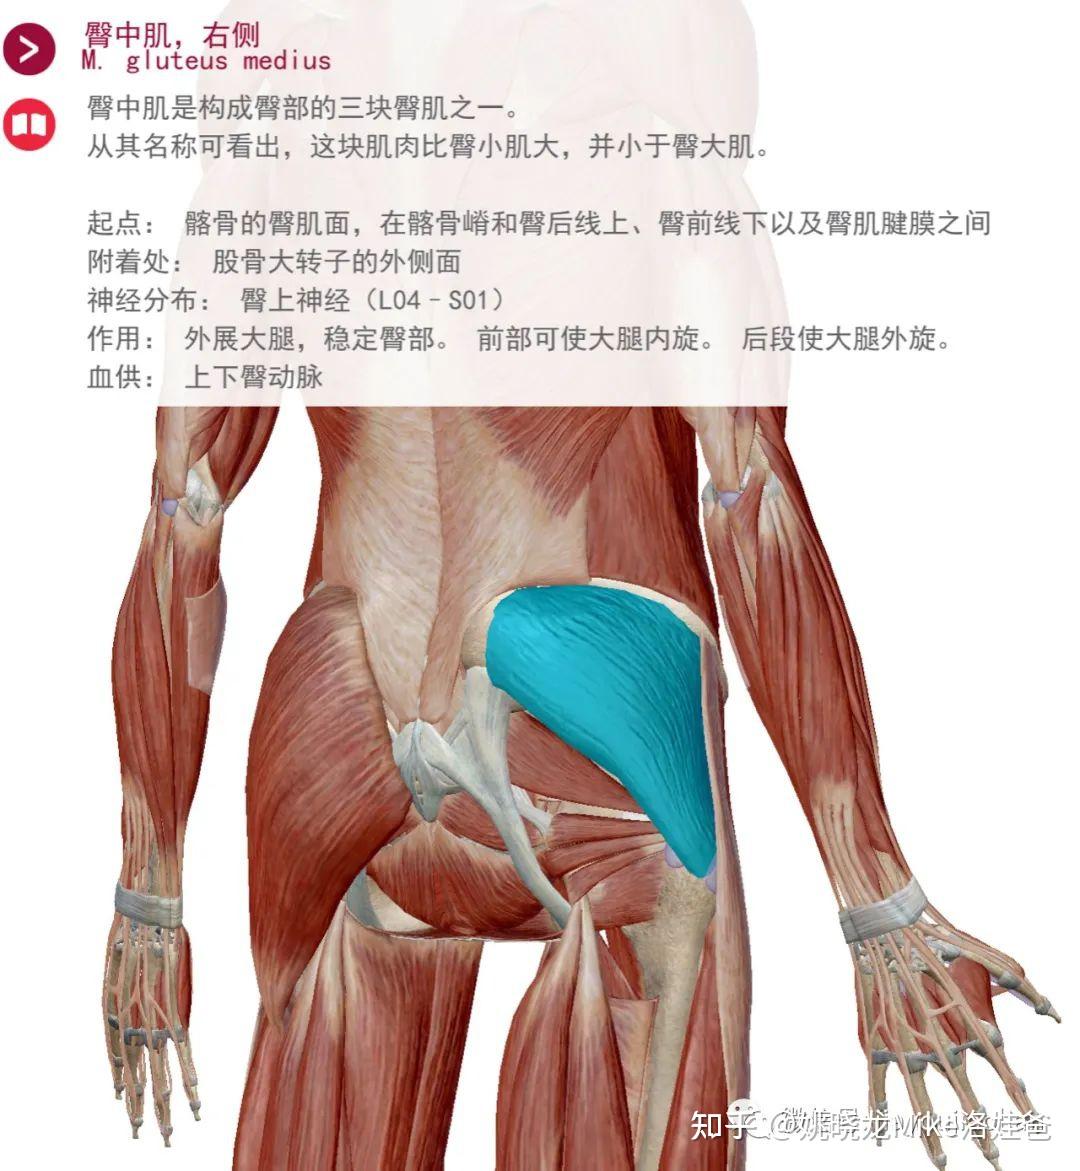 臀中肌和臀大肌位置图片